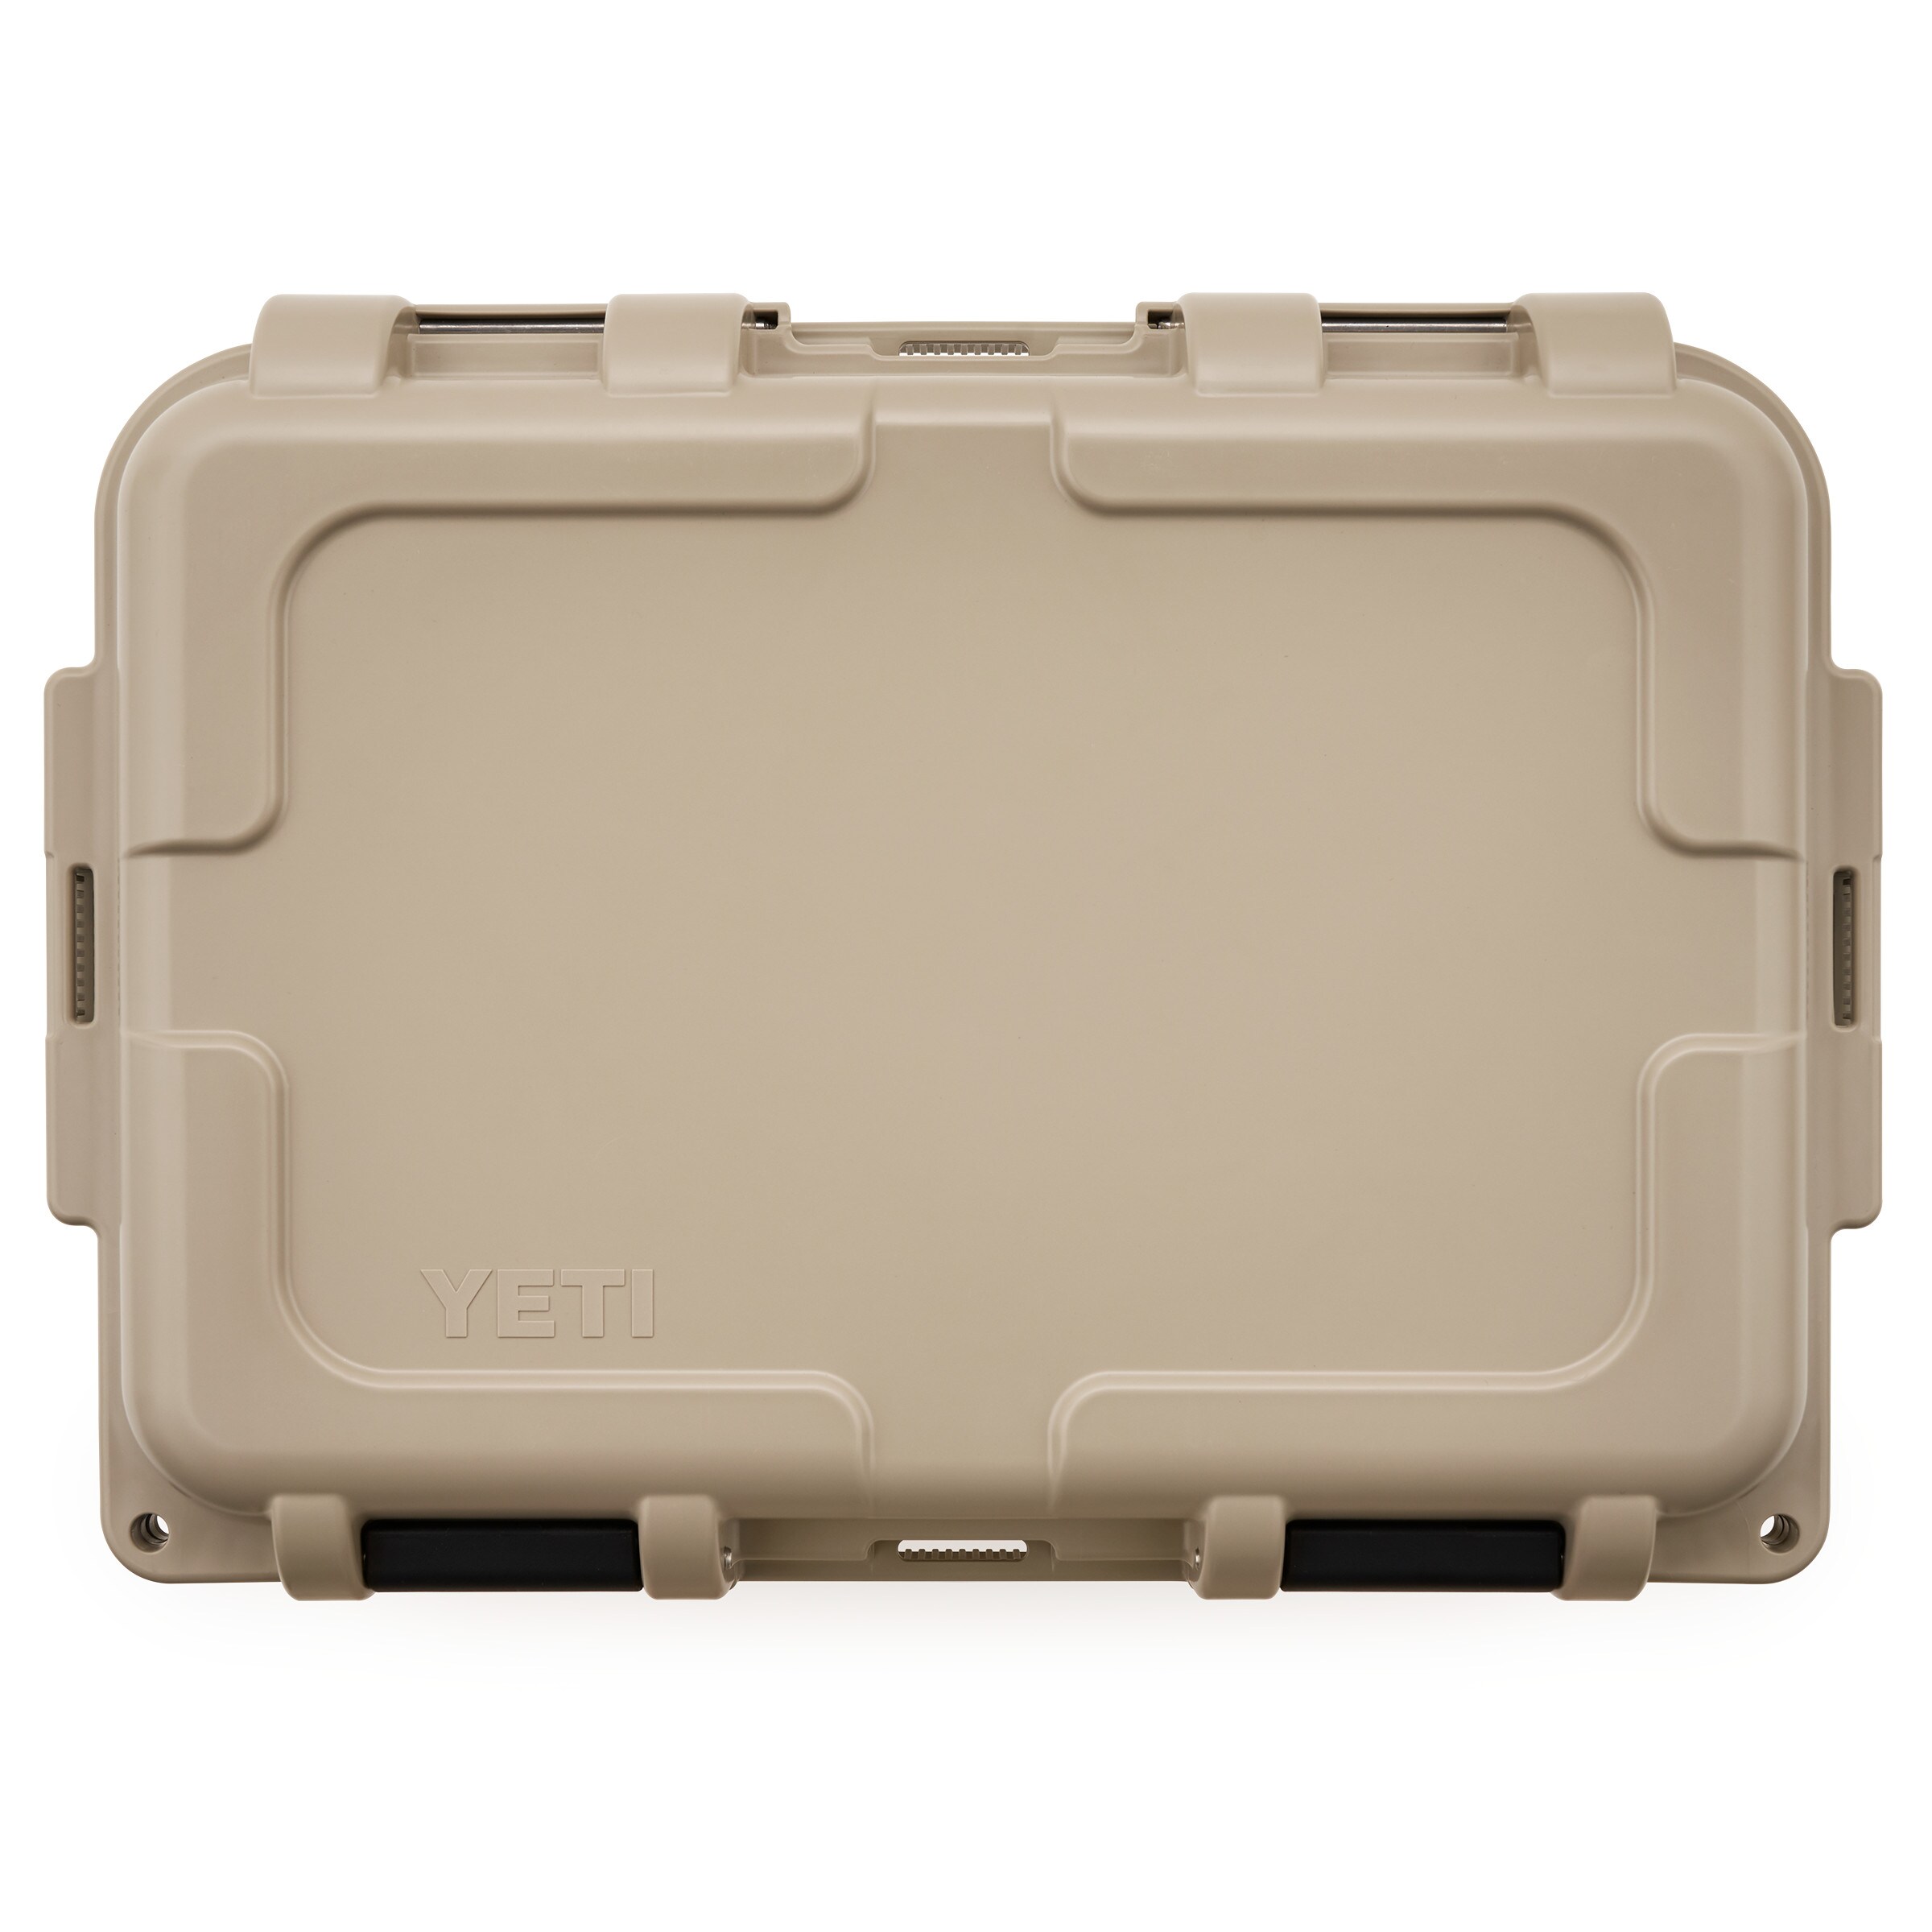 YETI® GoBox Gear Case review! All sizes in storage, heavy duty